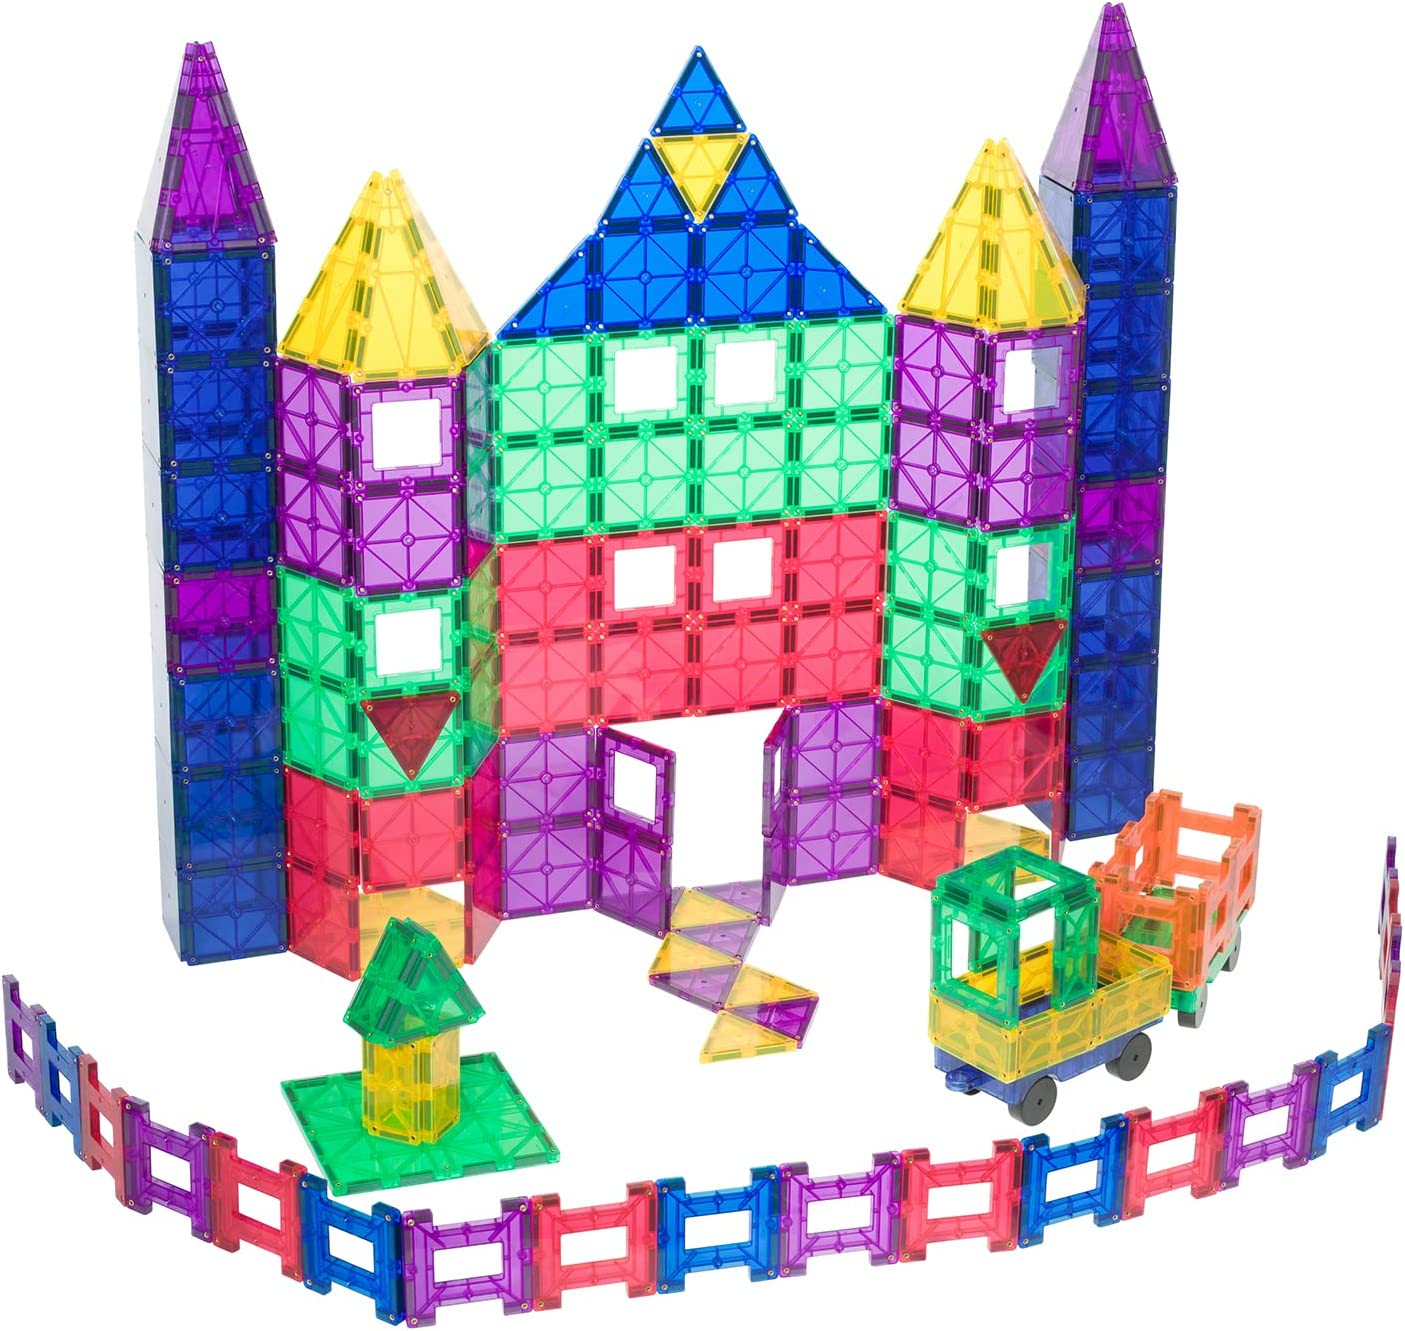 Jogo Magnético Magnastix Interativo Educativo Família Adulto Infantil 103  Peças Coloridas Montar Criar Construção Brincadeira Diversão